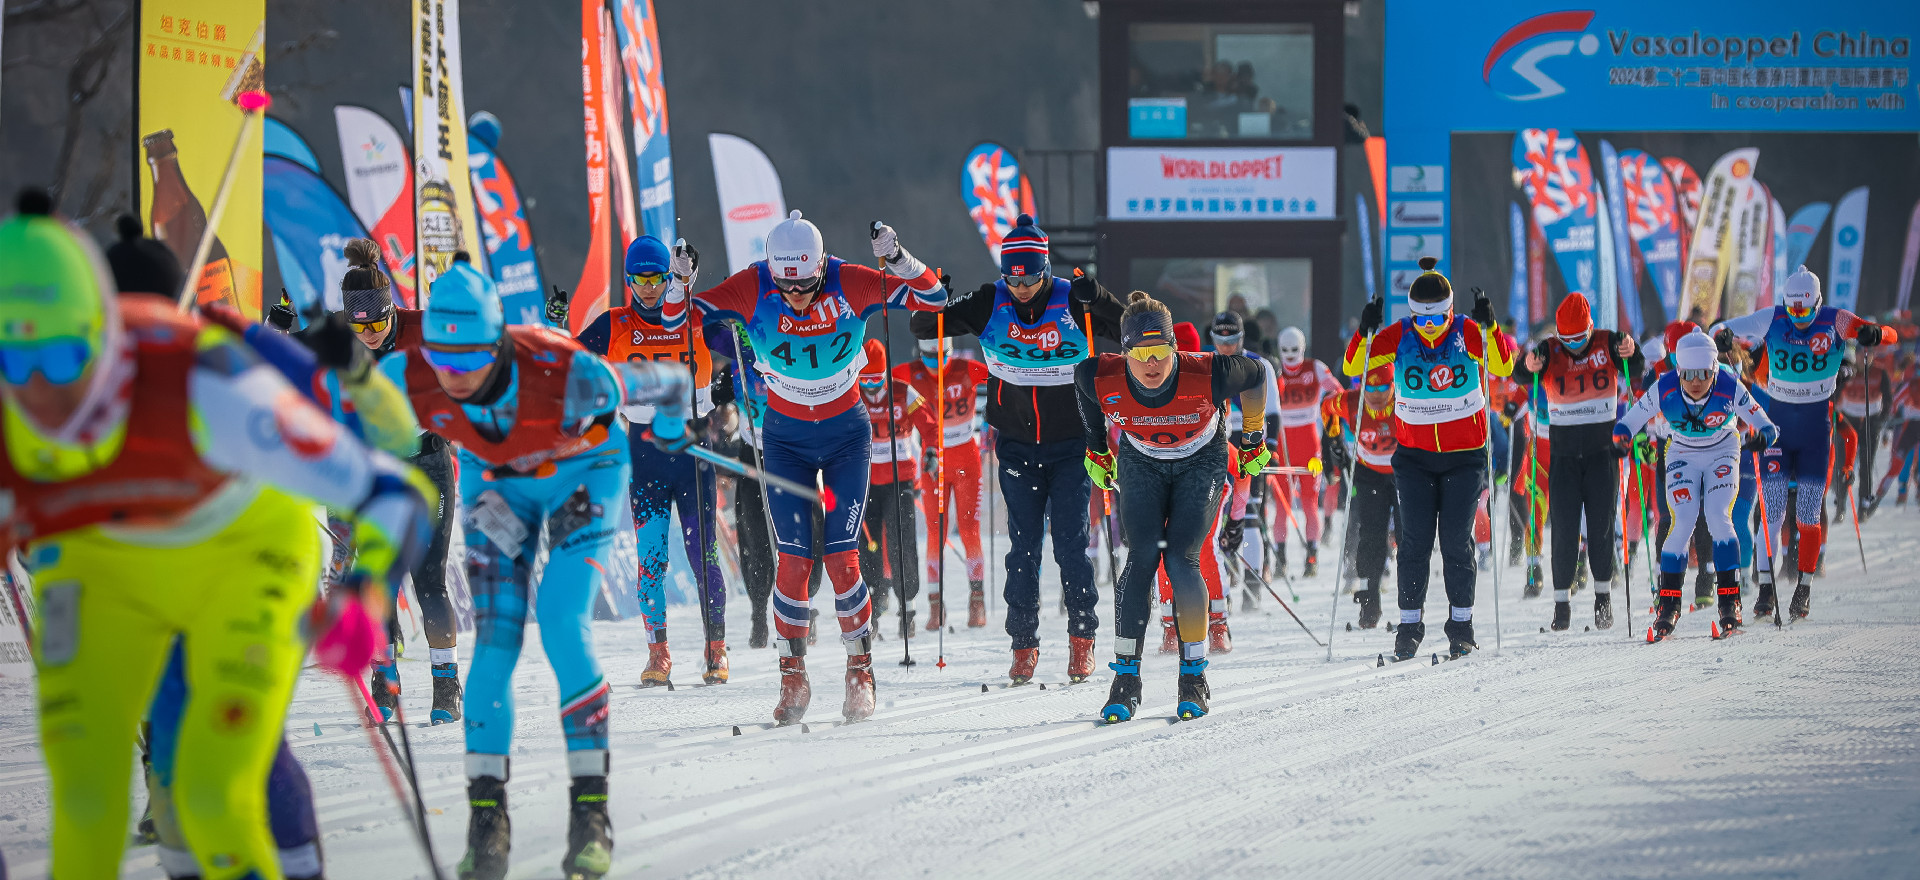 Vasaloppet International Ski Festival kicks off in Jilin 